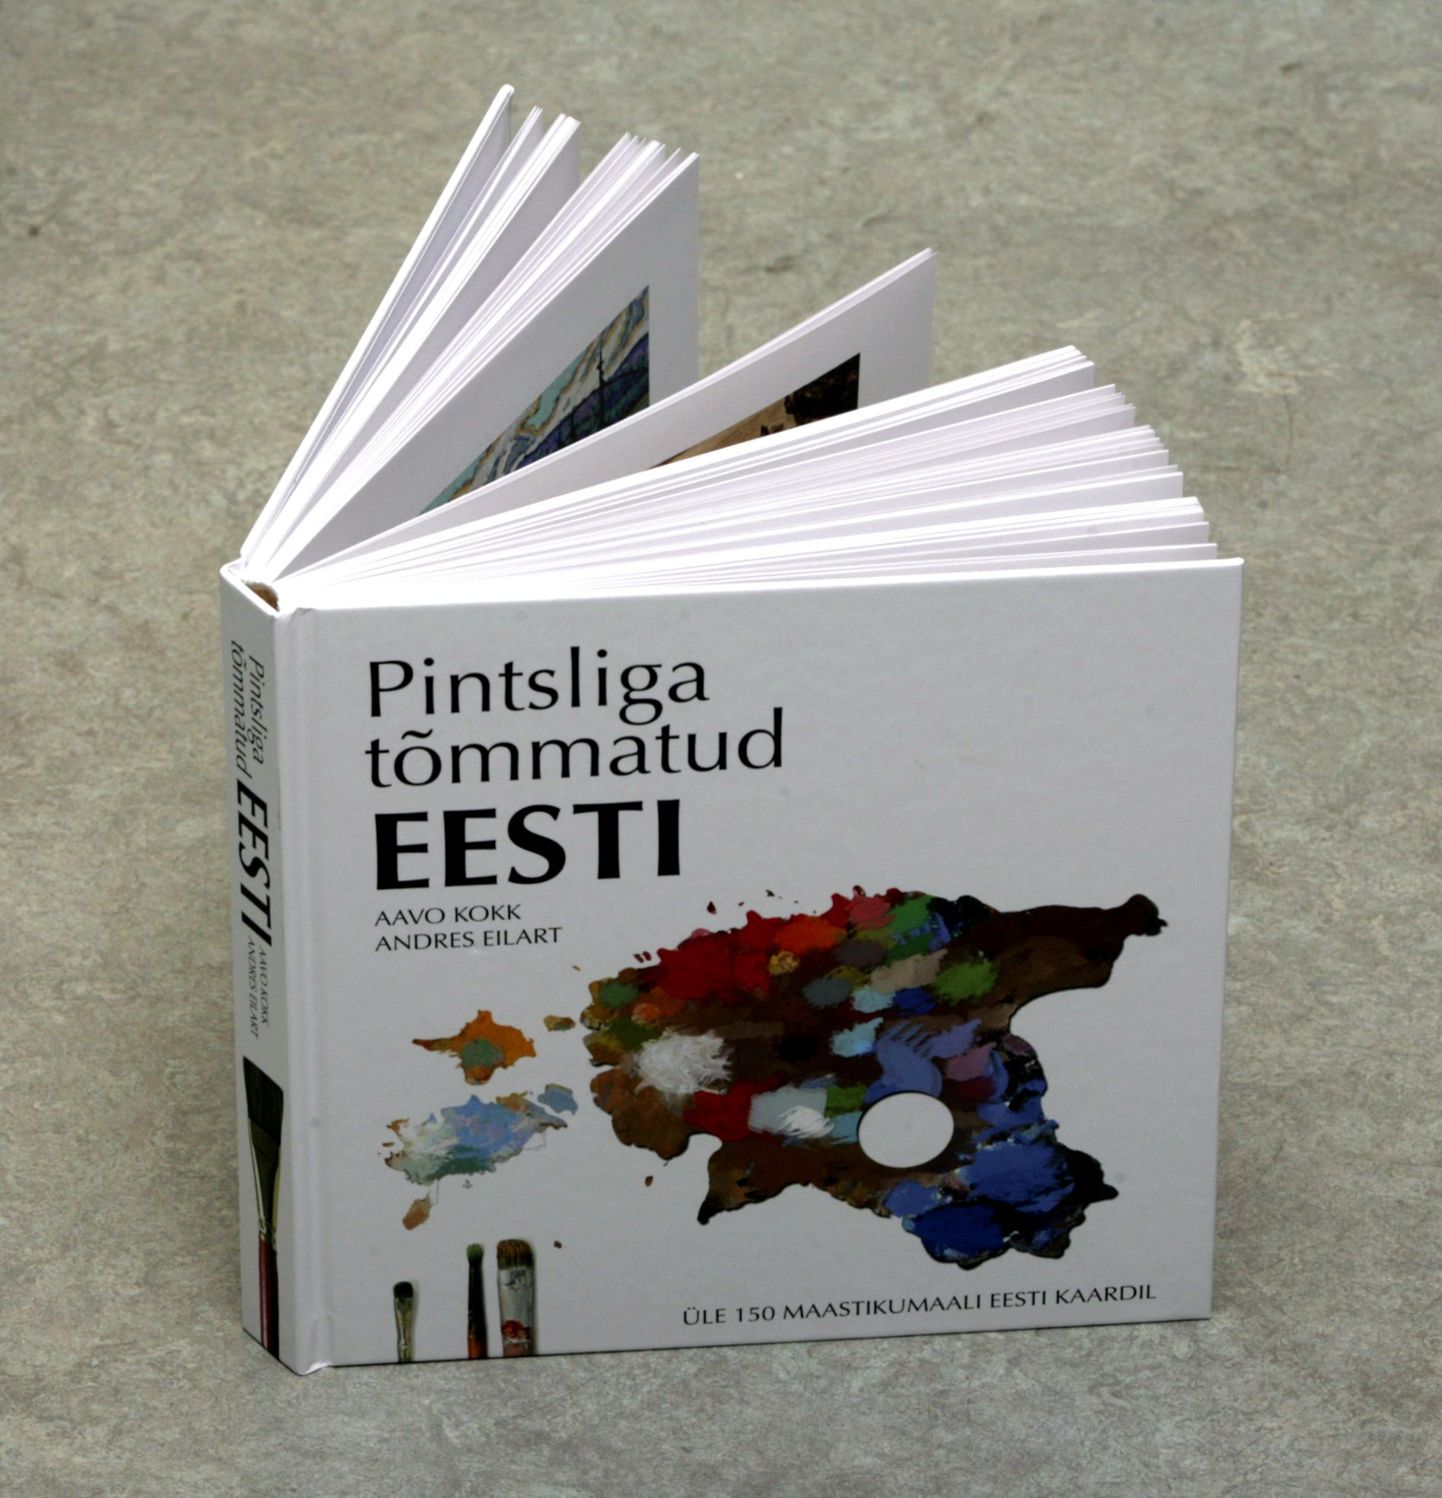 Pildl üks uuemaid raamatuid Eesti kultuurist